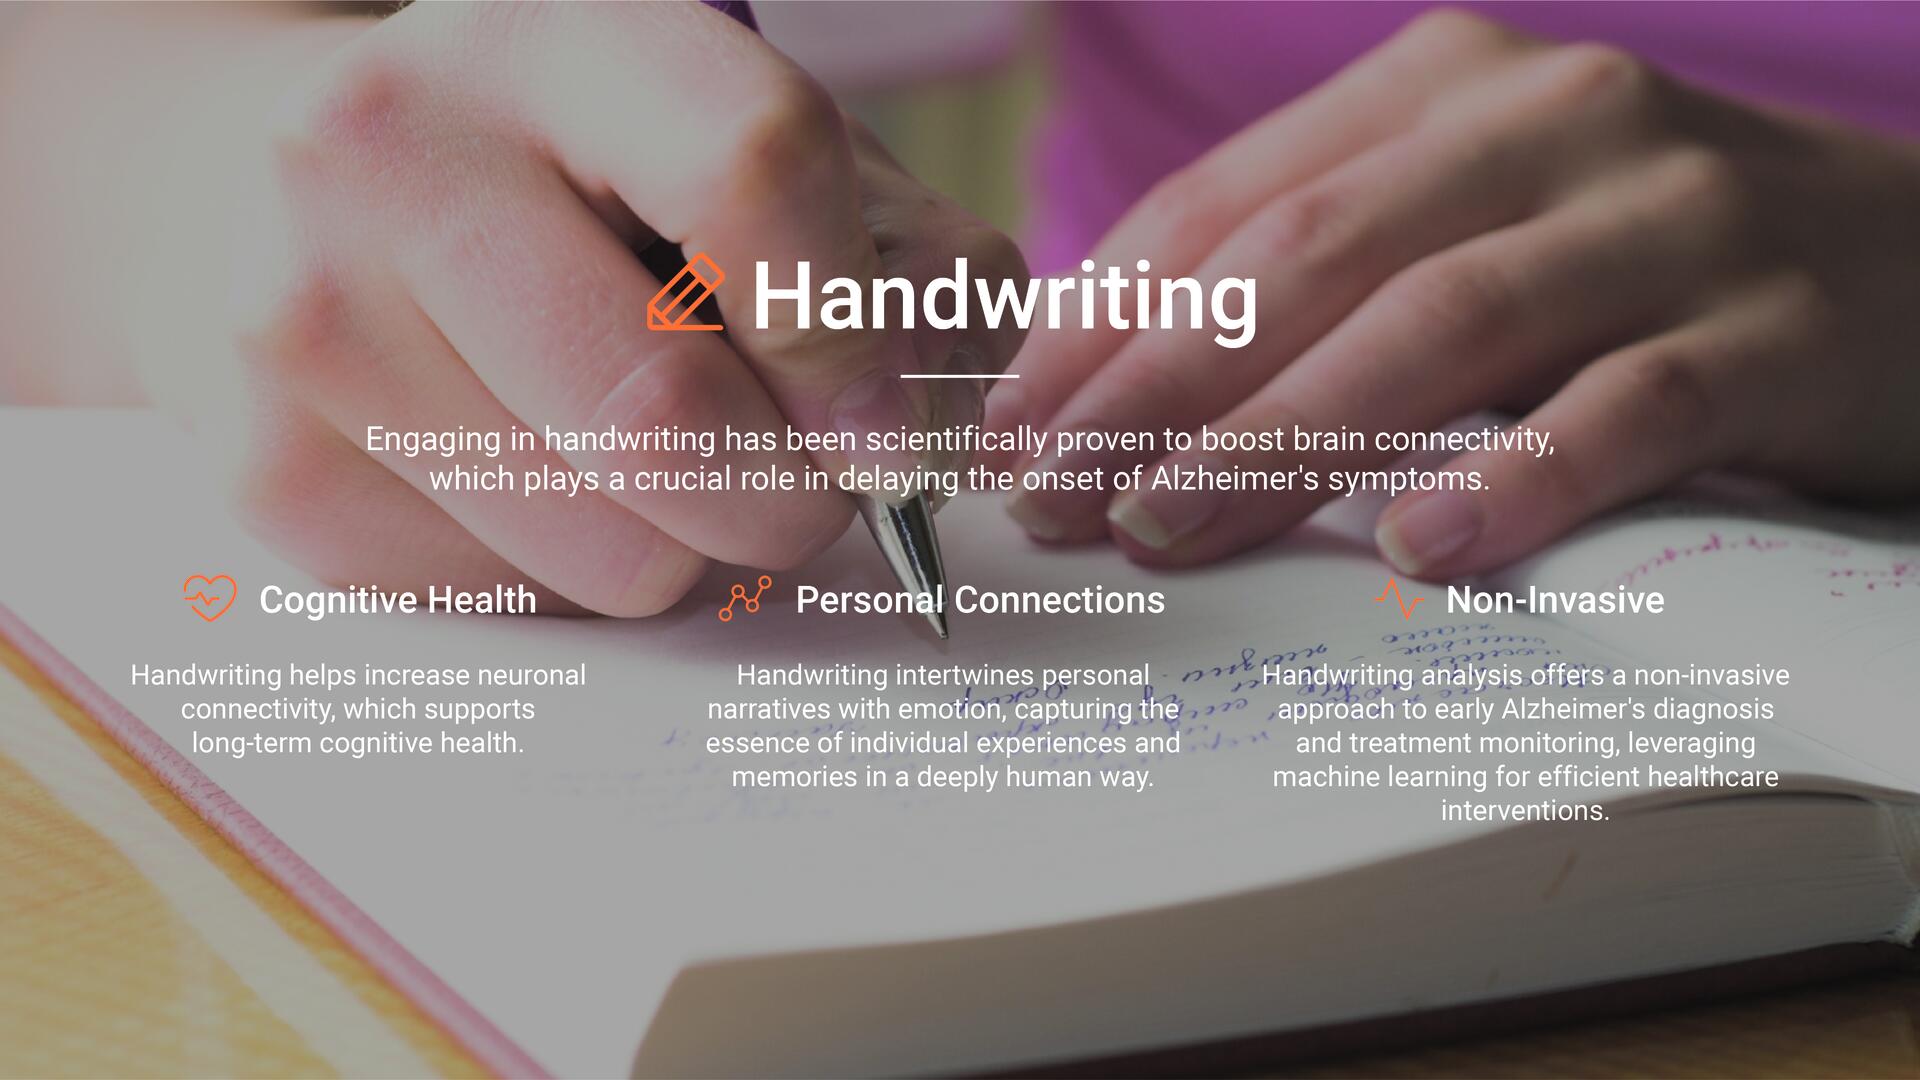 iO, benefits of handwriting